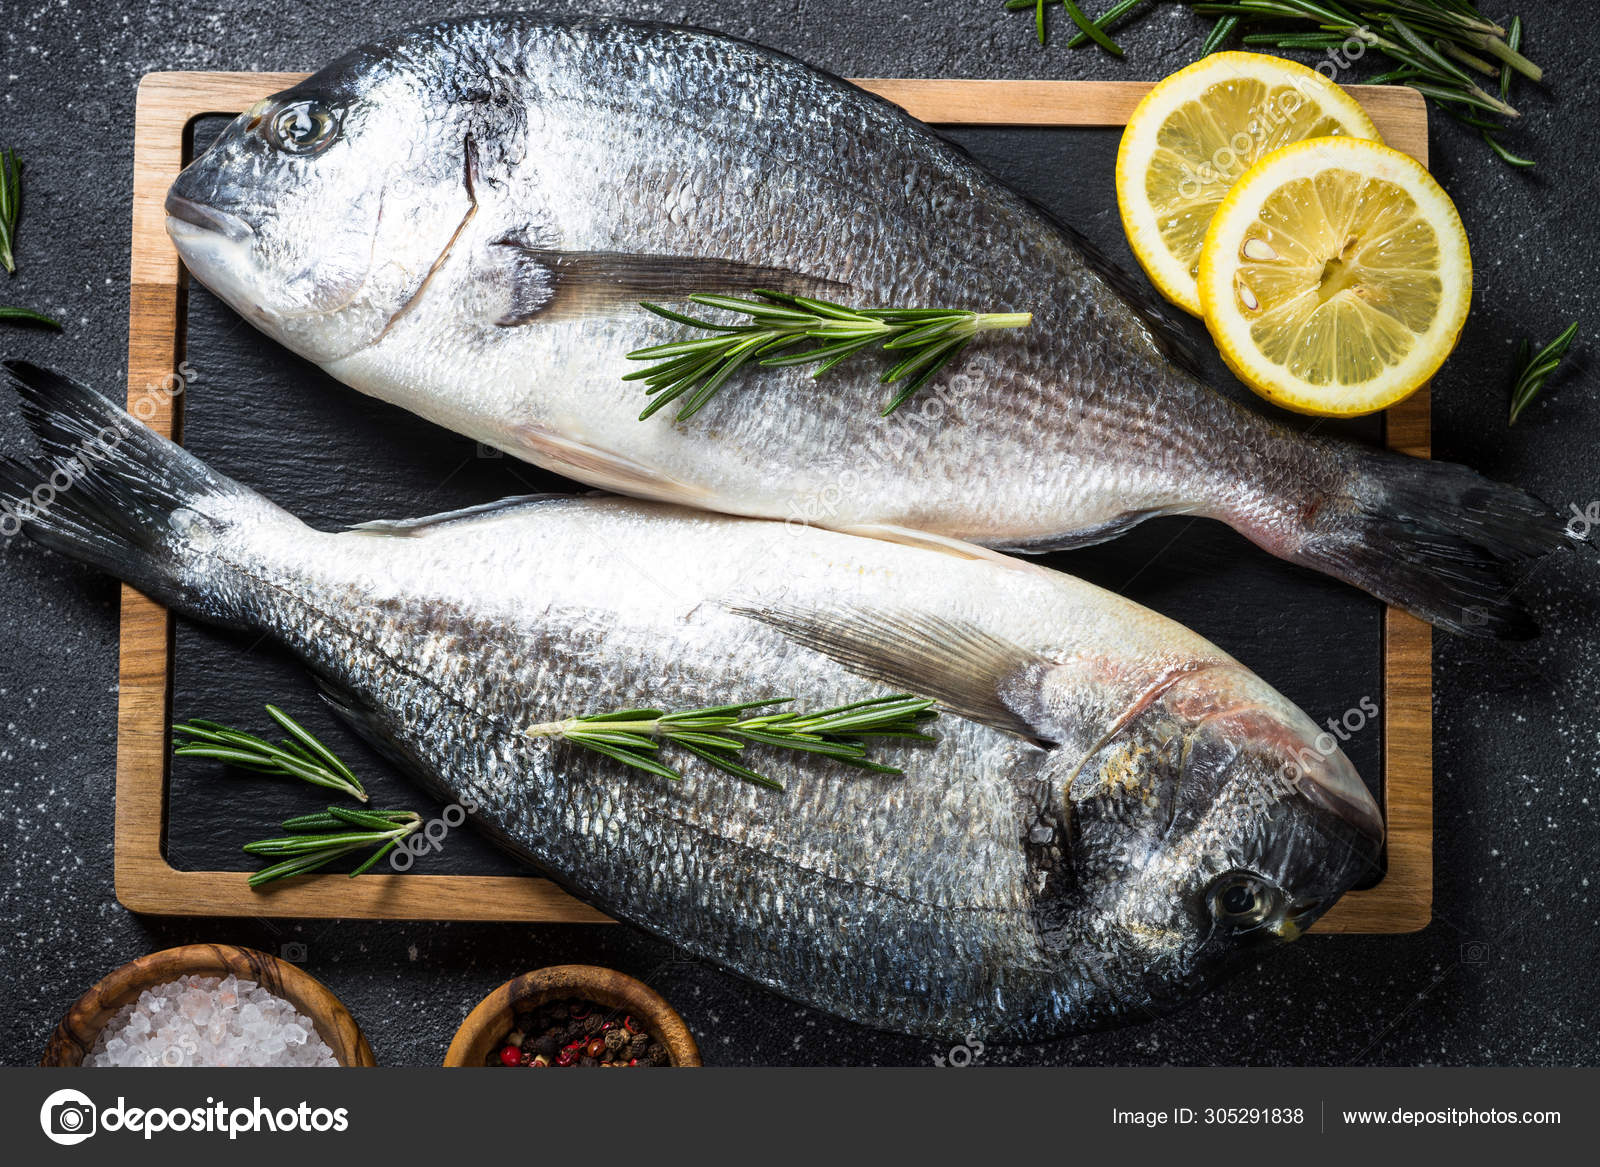 魚写真素材 ロイヤリティフリー魚画像 Depositphotos